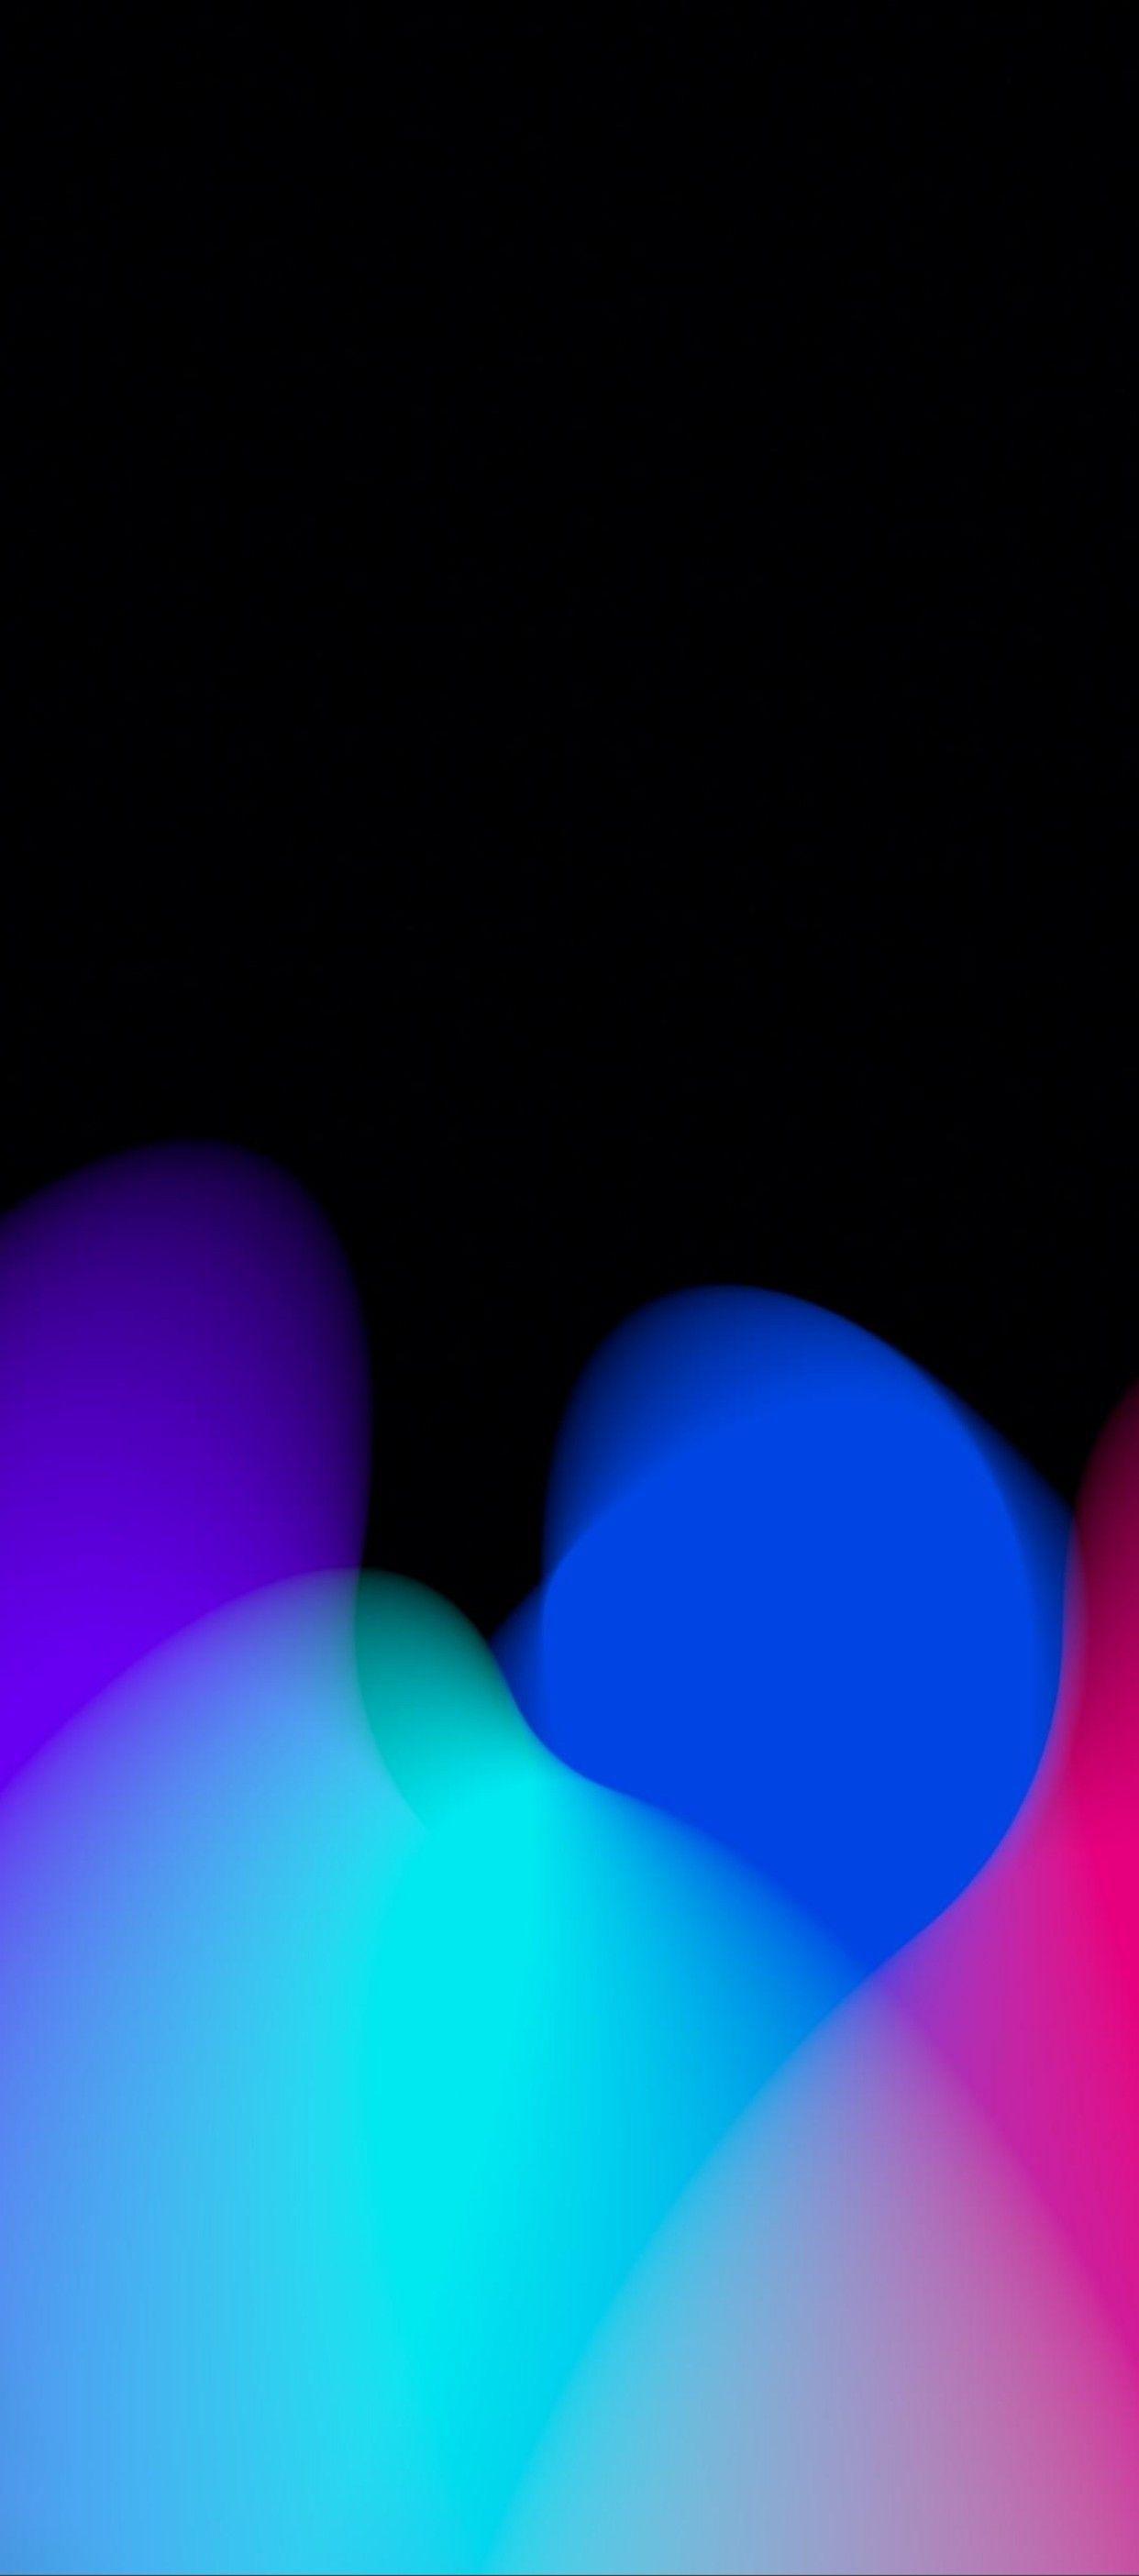 1242x2809 iOS 11, iPhone X, đen, đỏ, tím, xanh lam, sạch sẽ, đơn giản